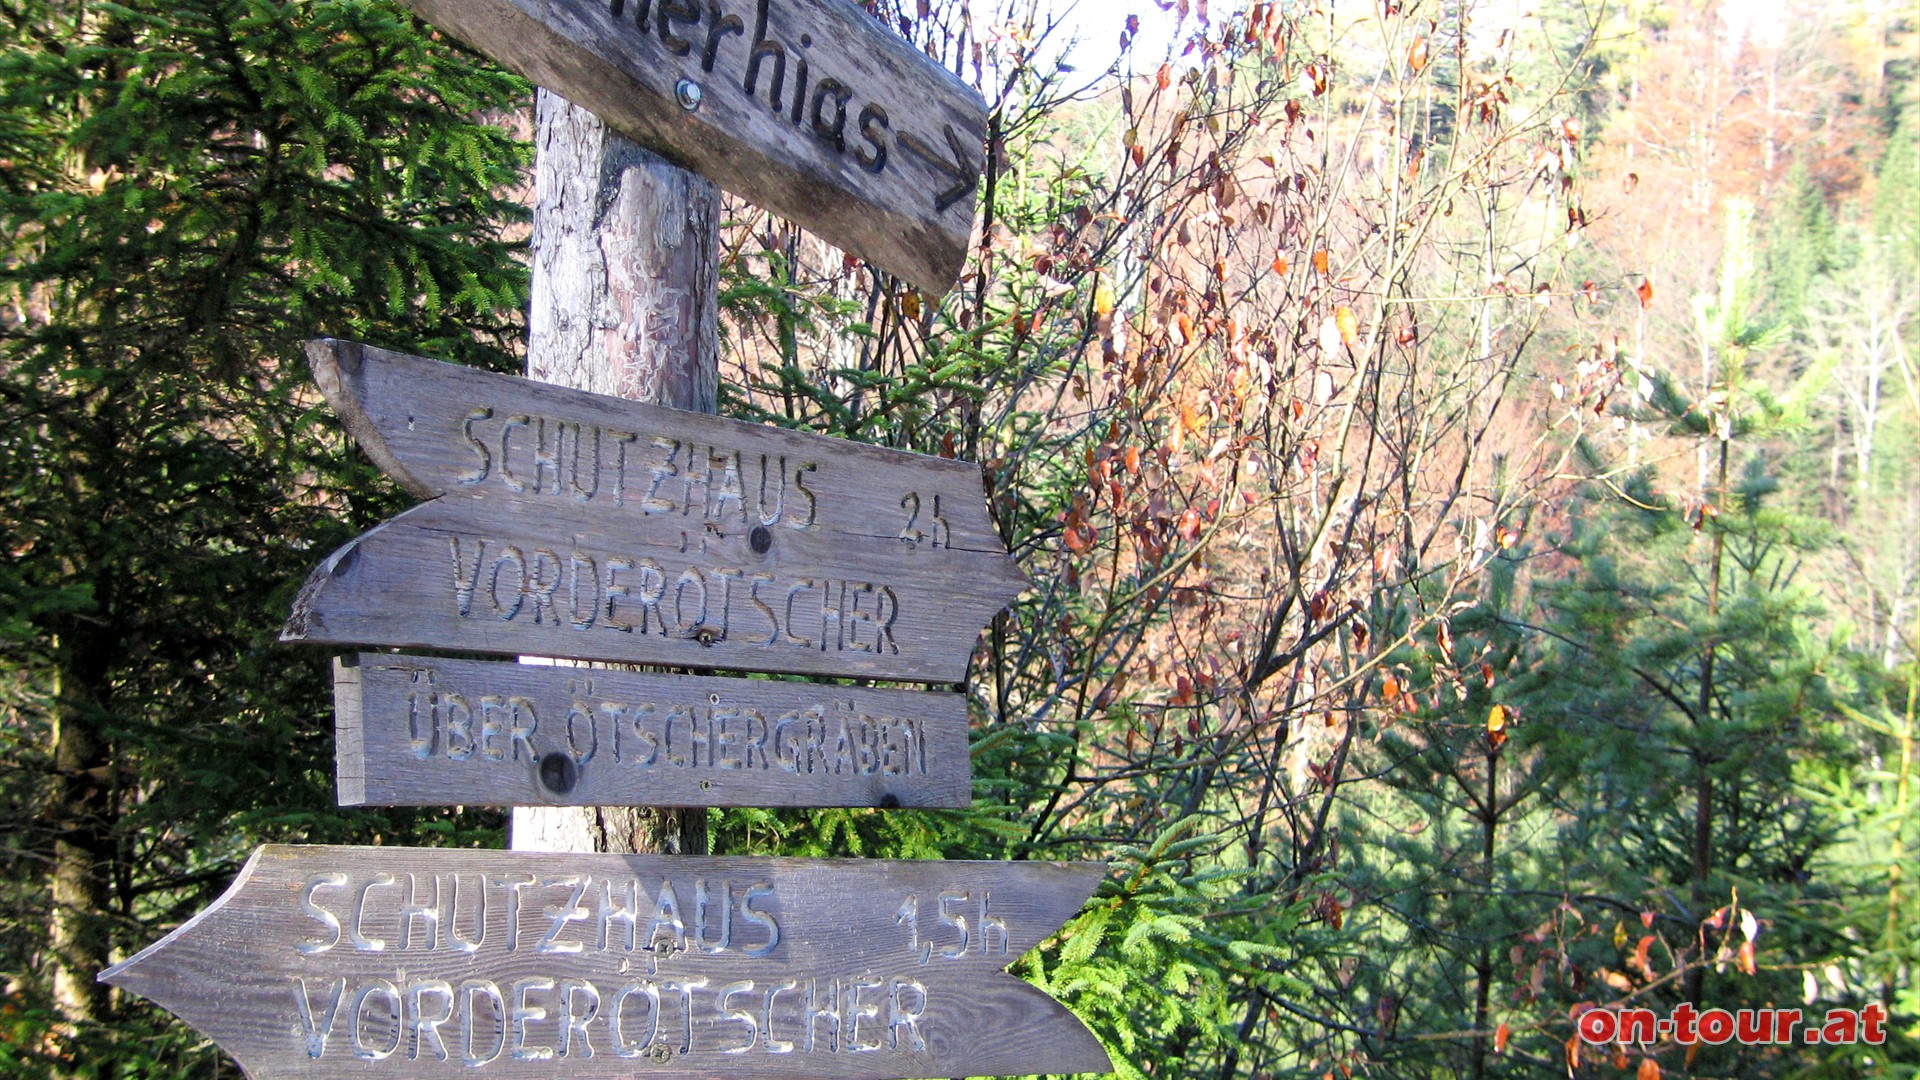 Entlang der Forststrae bis zum Abzweig tscherhias, dann rechts bergab.